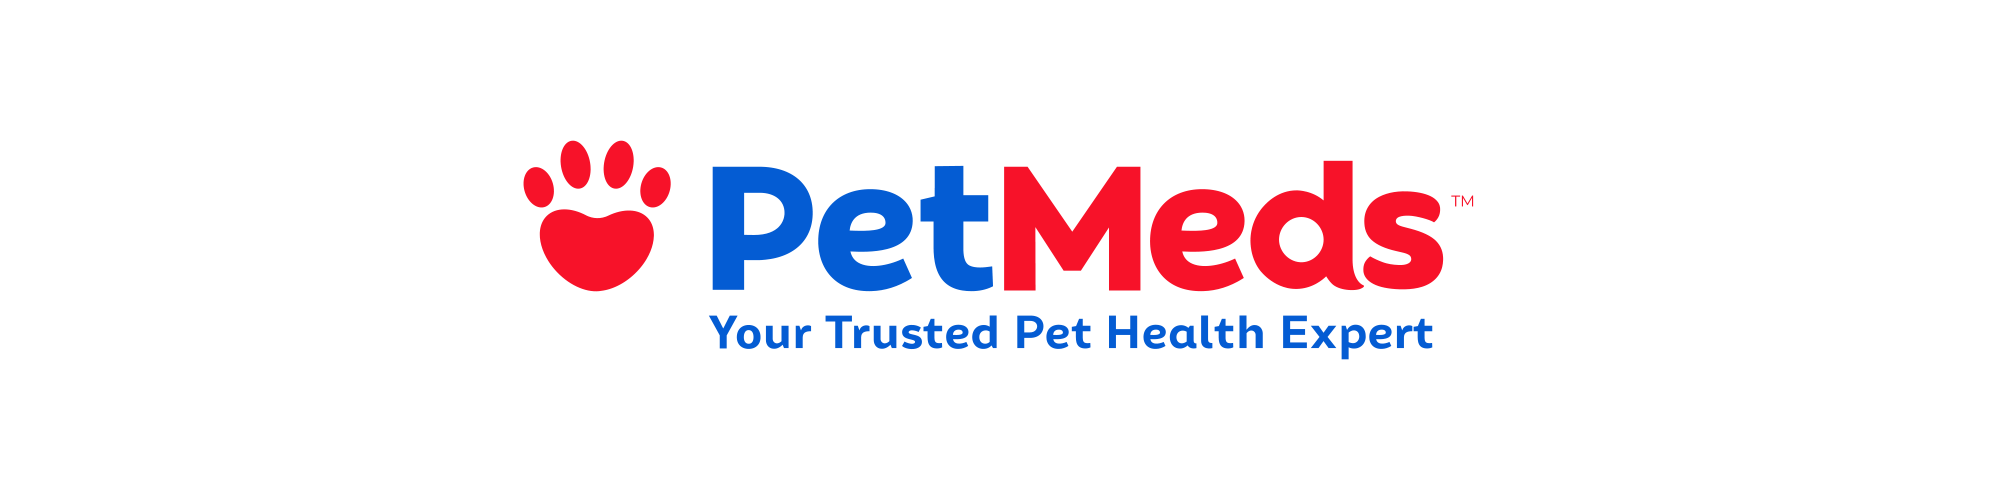 PetMeds logo.